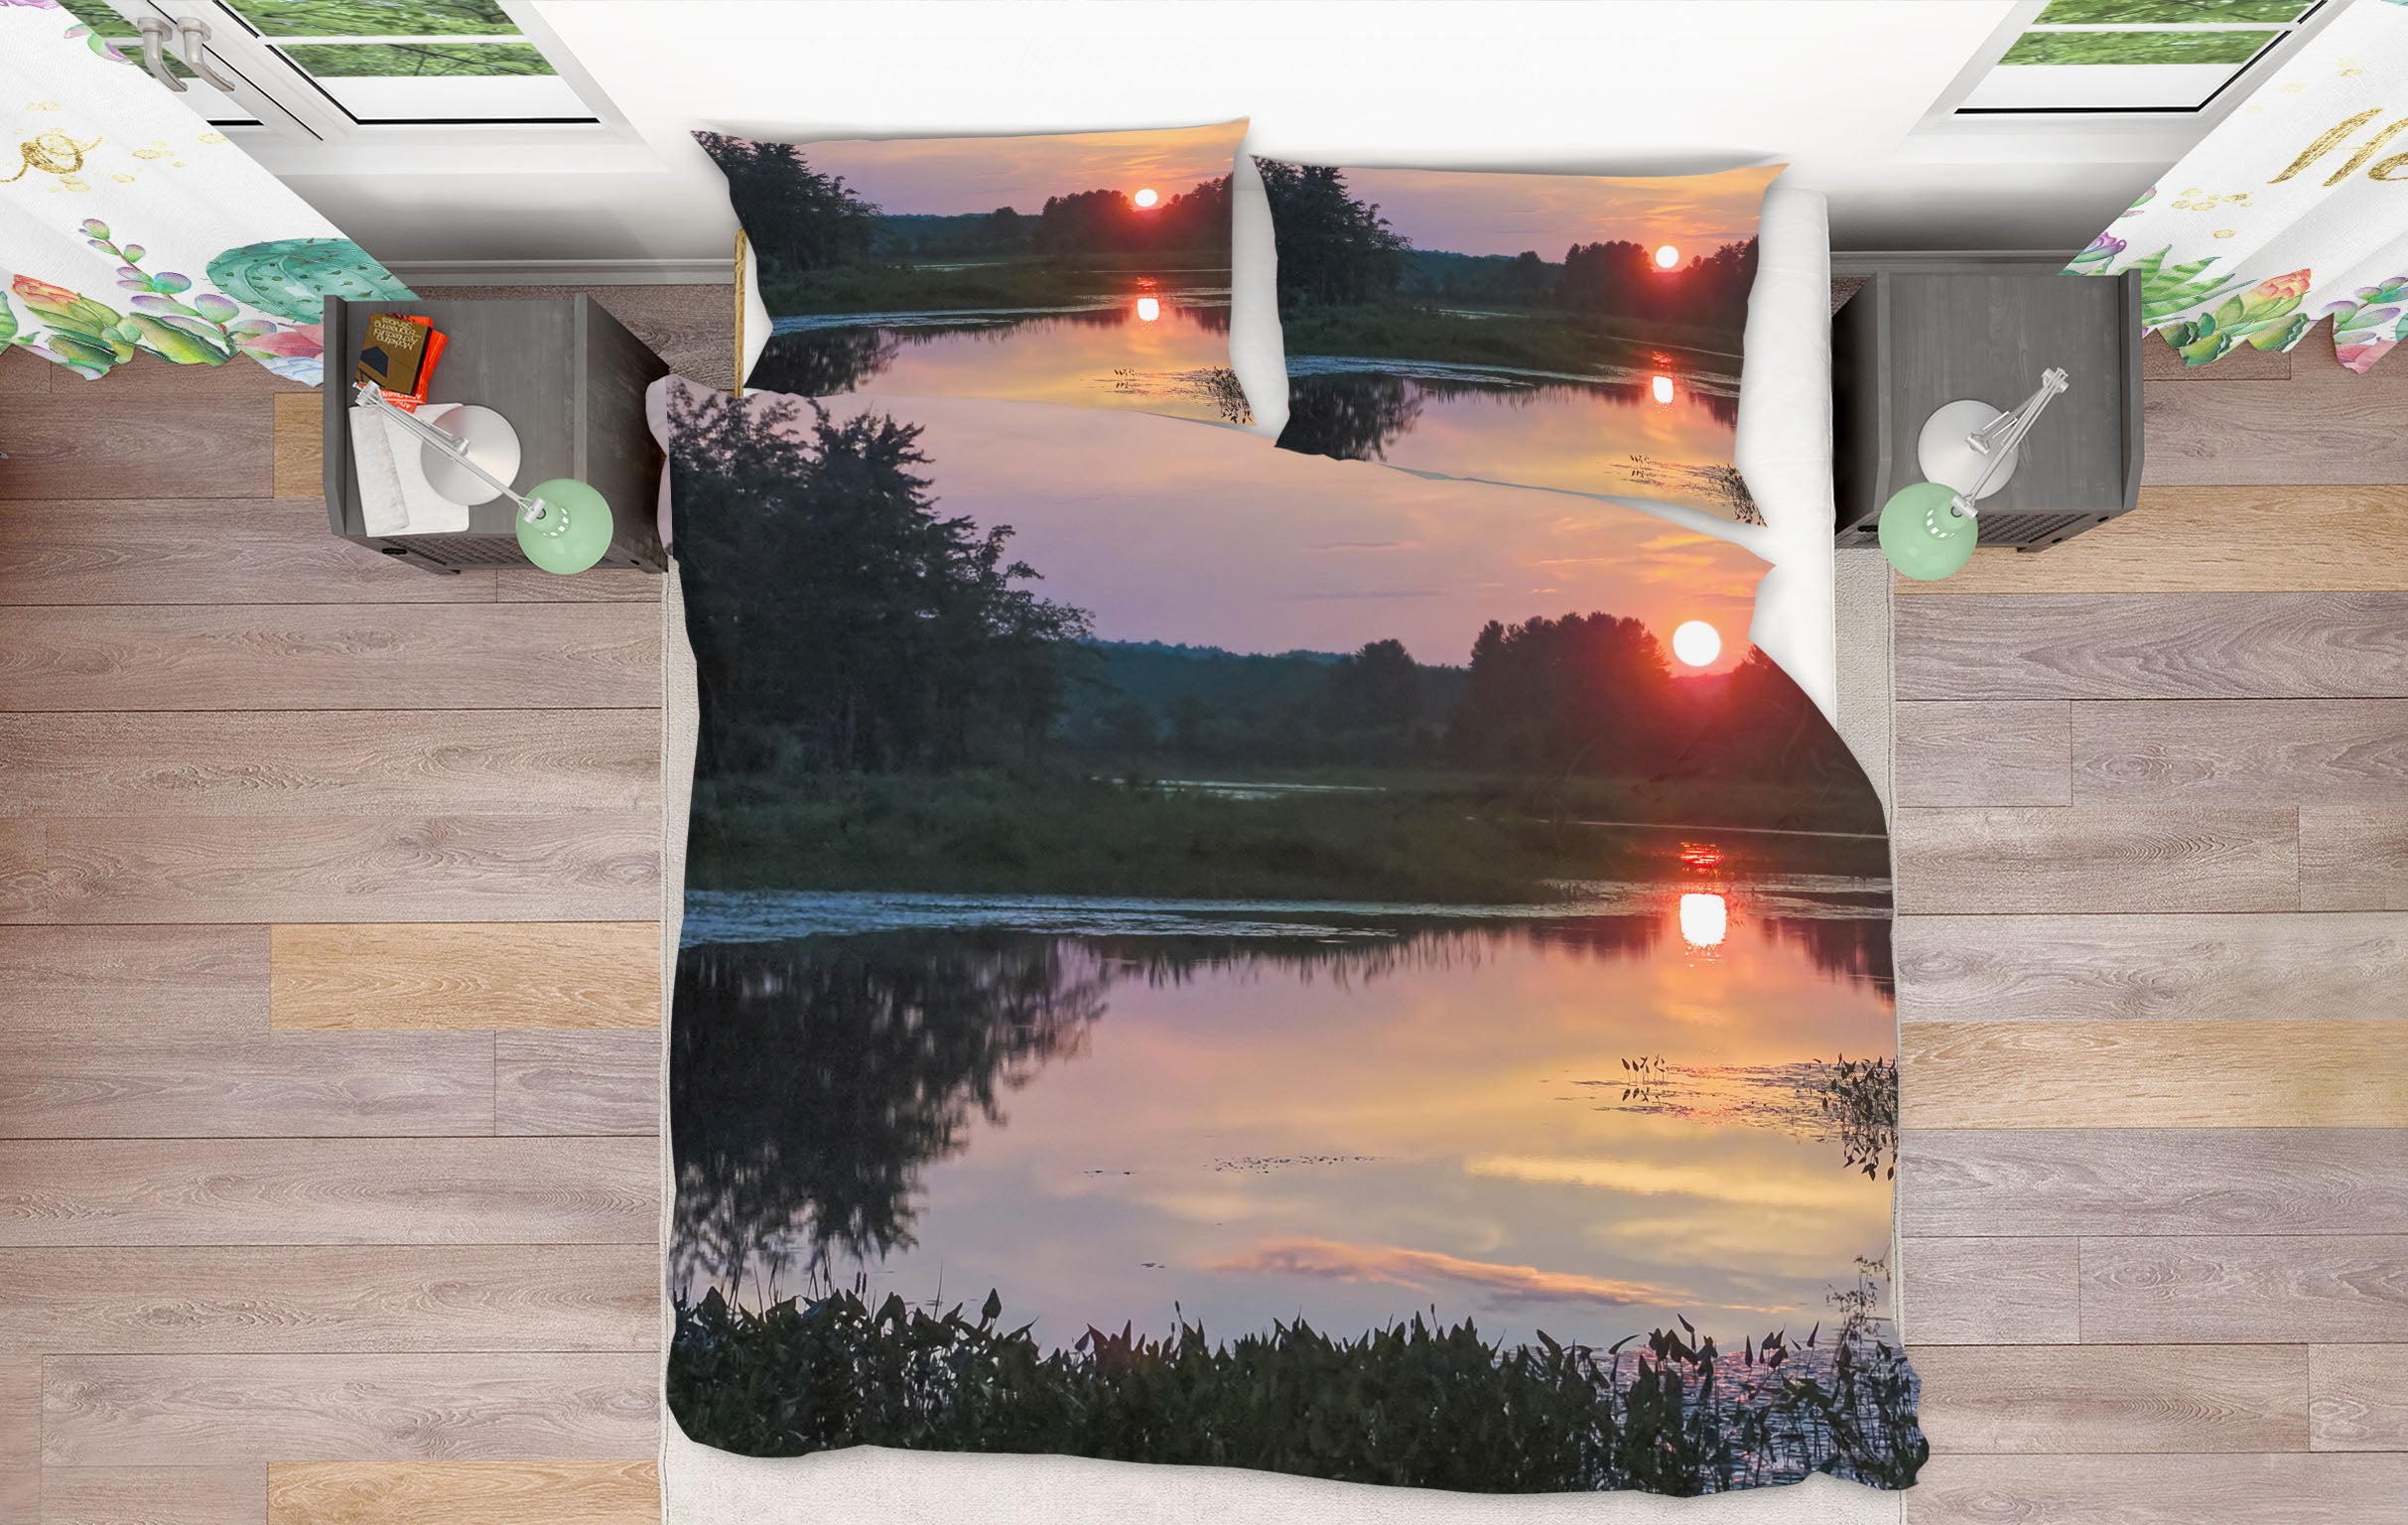 3D Sunset Marsh 1028 Jerry LoFaro bedding Bed Pillowcases Quilt